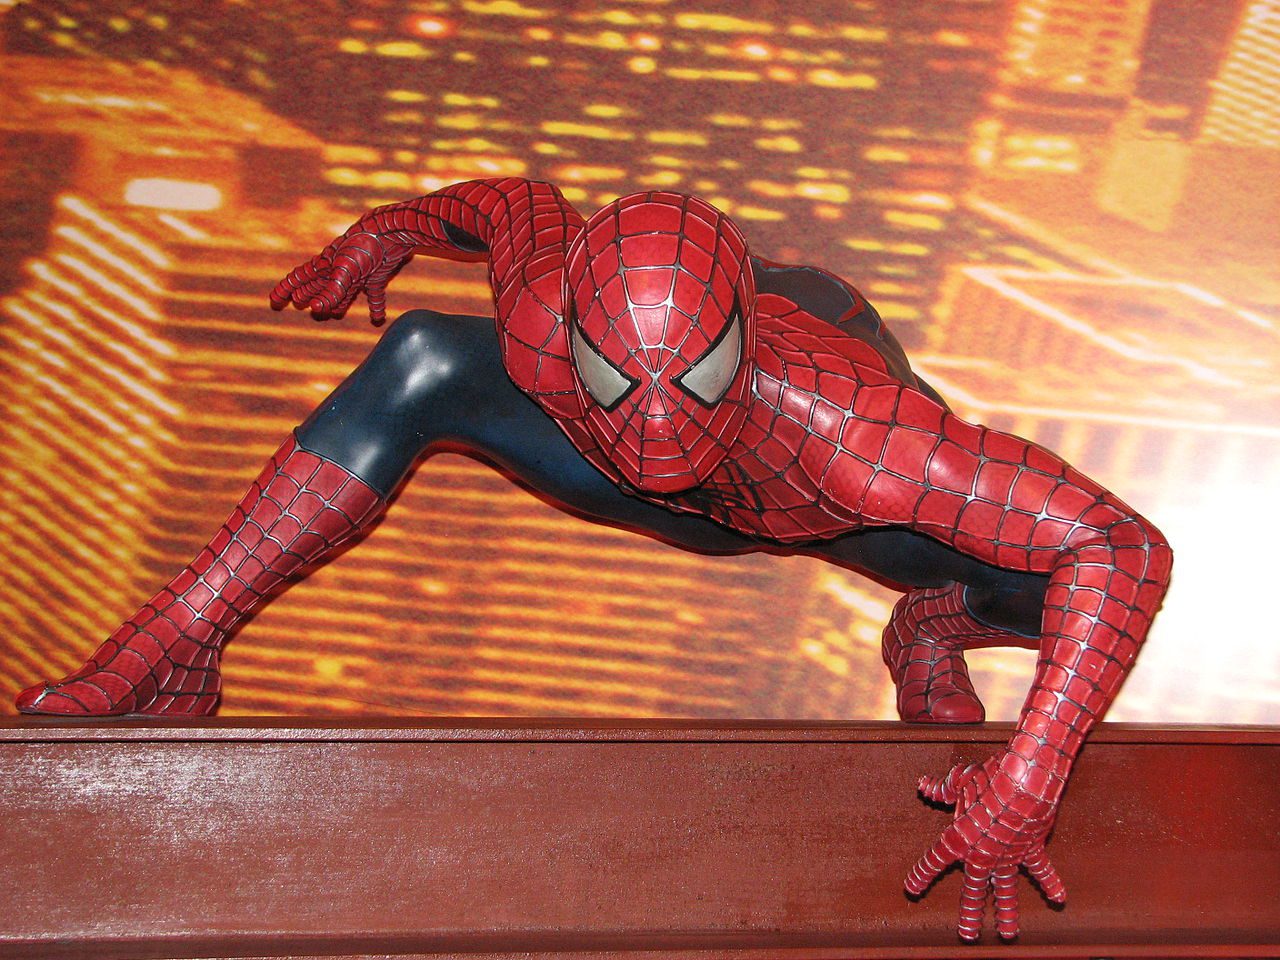 Spider-Man Day